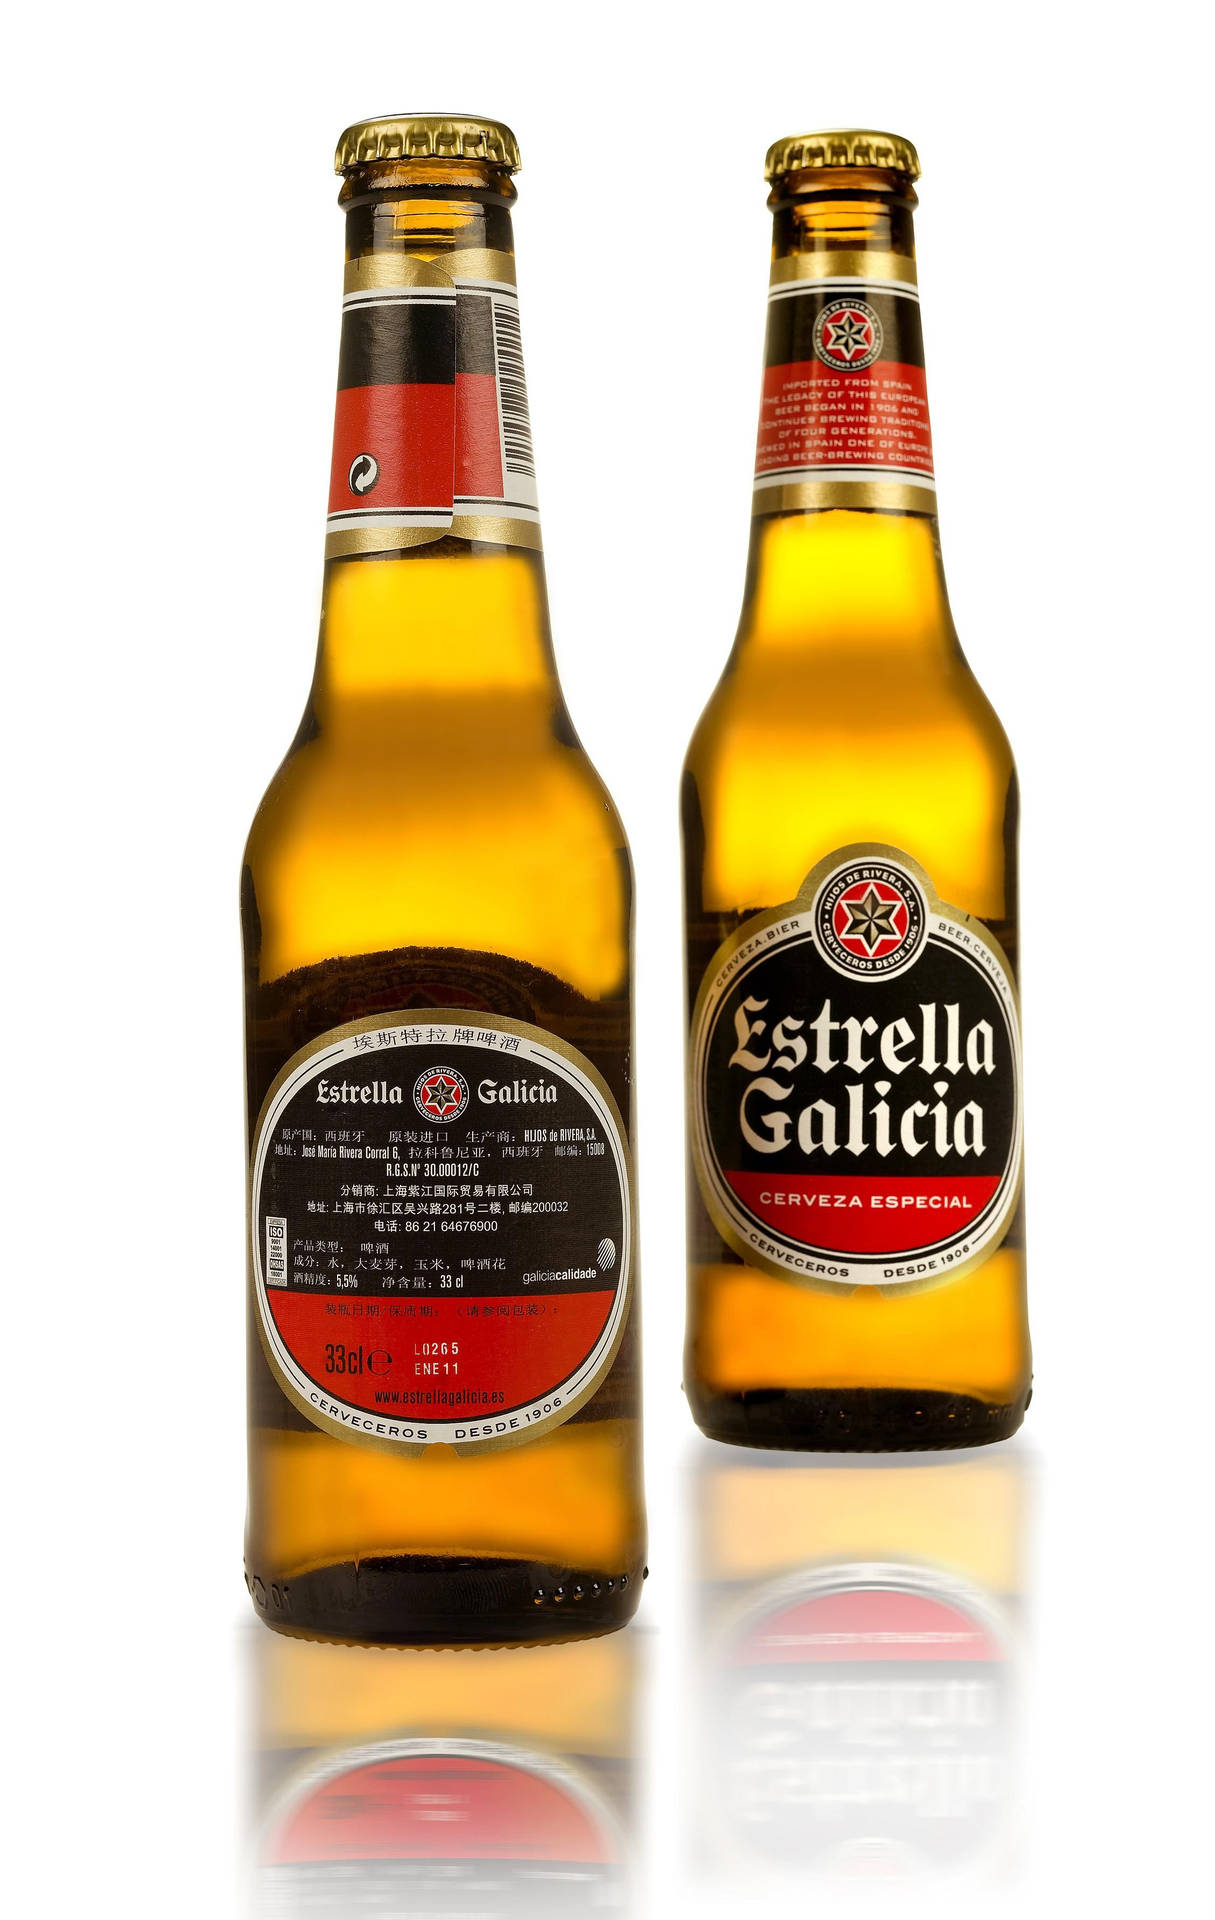 Tvåflaskor Av Estrella Galicia. Wallpaper